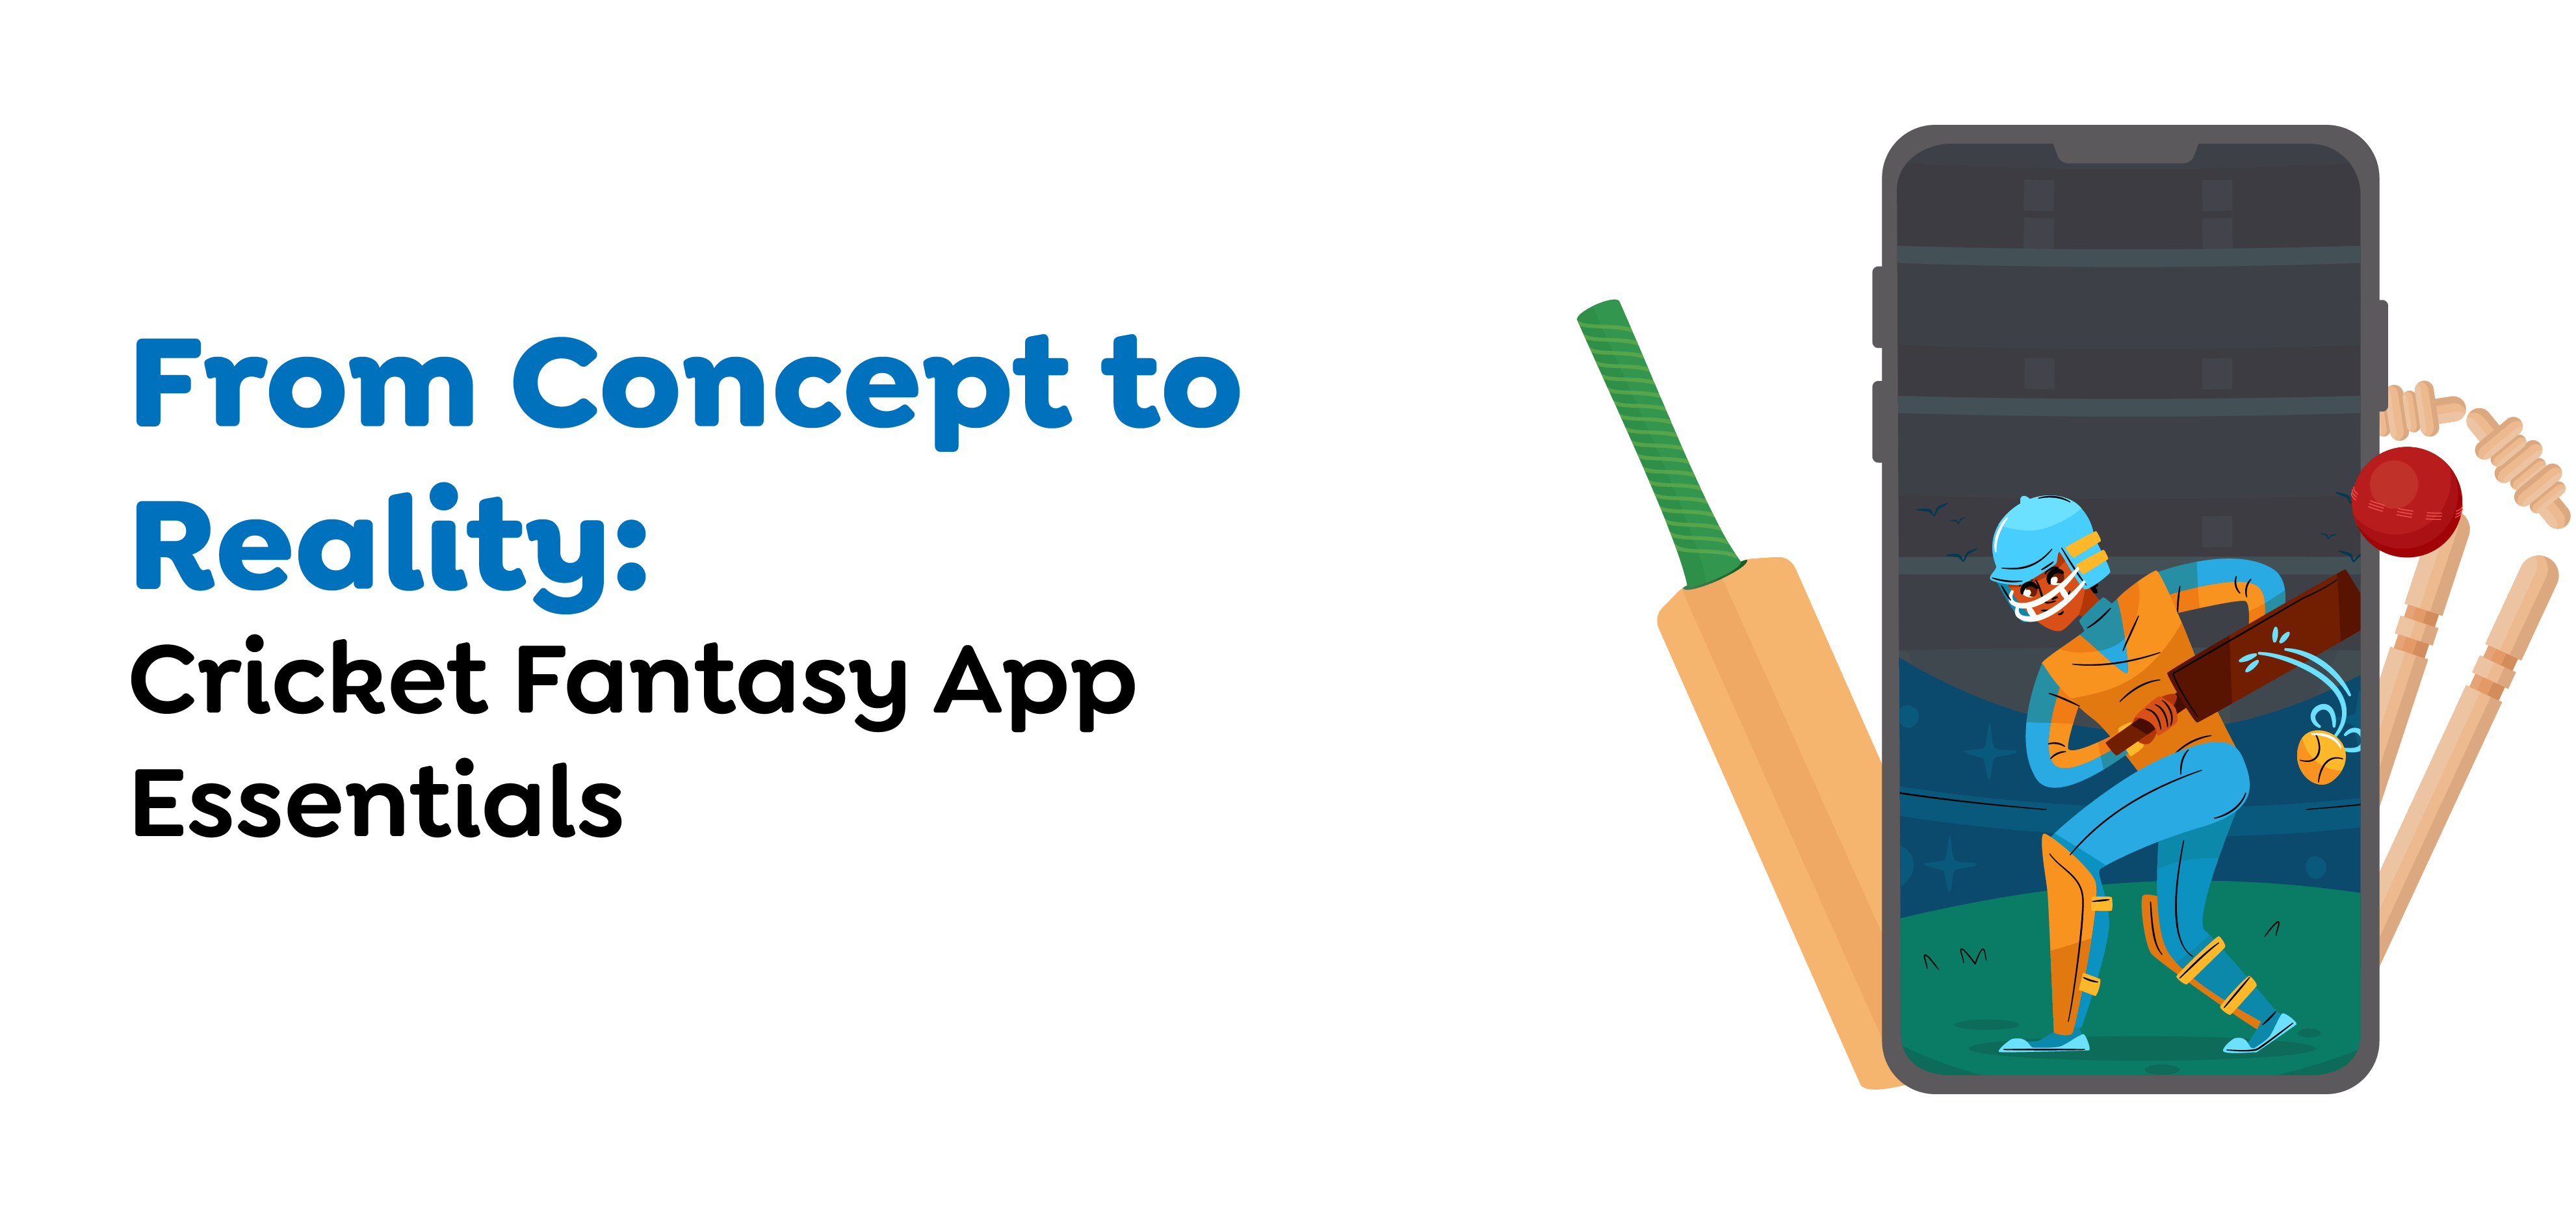 Features of Cricket Fantasy App